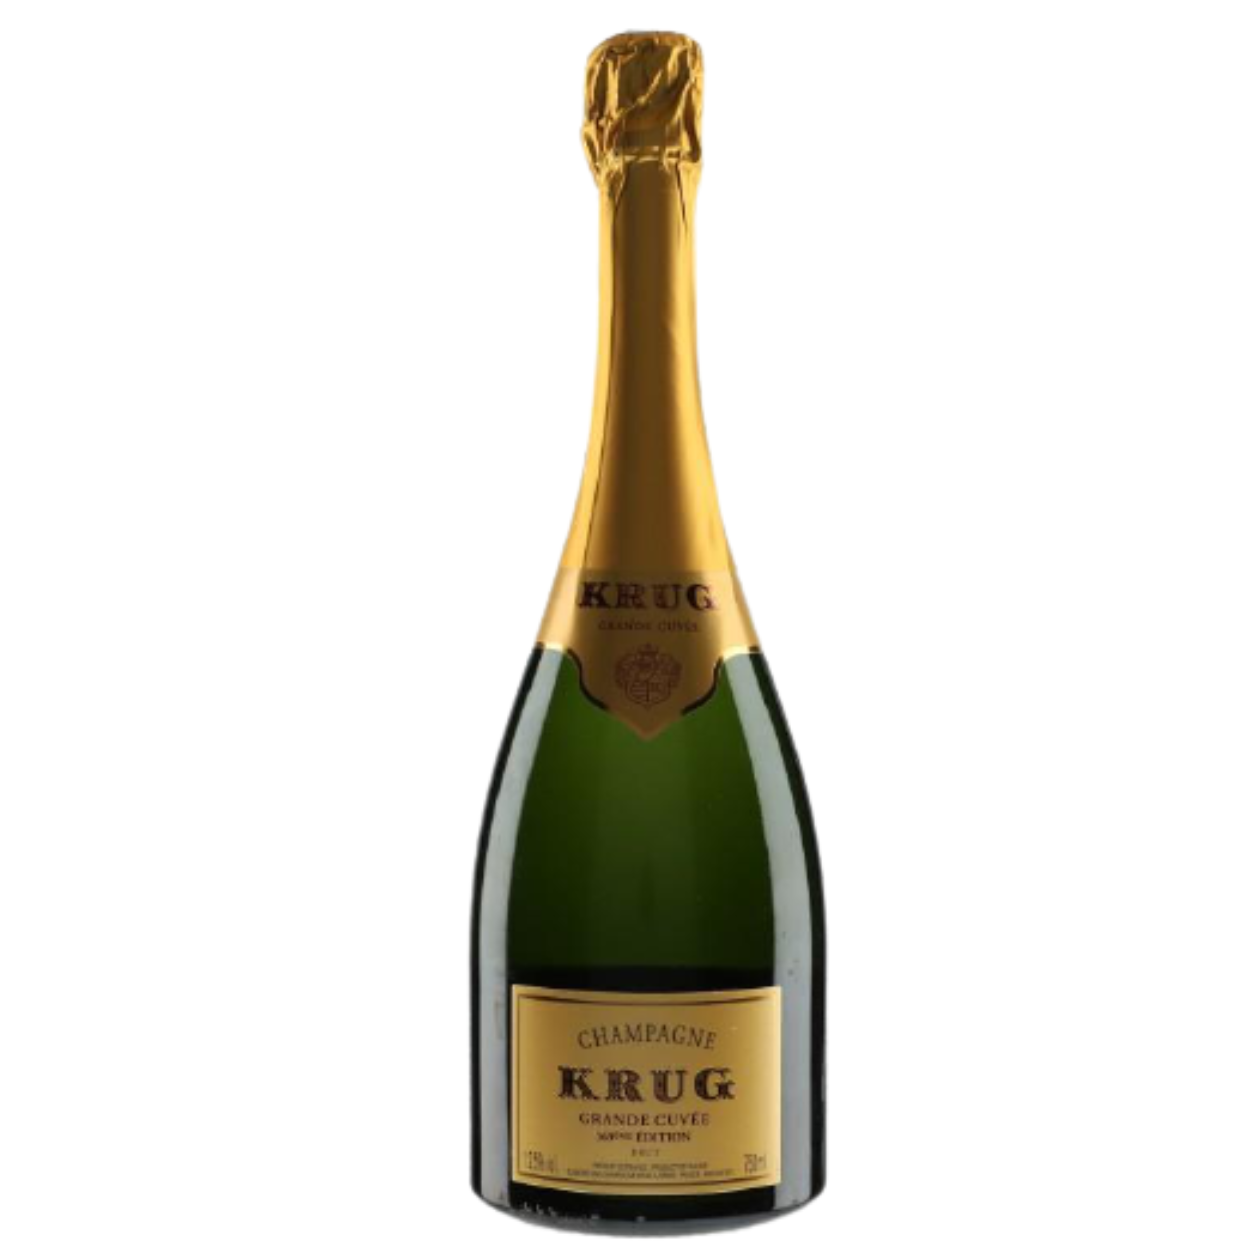 NV Krug 171 eme Edition France Brut Cuvee | Connection Champagne Grande The Wine